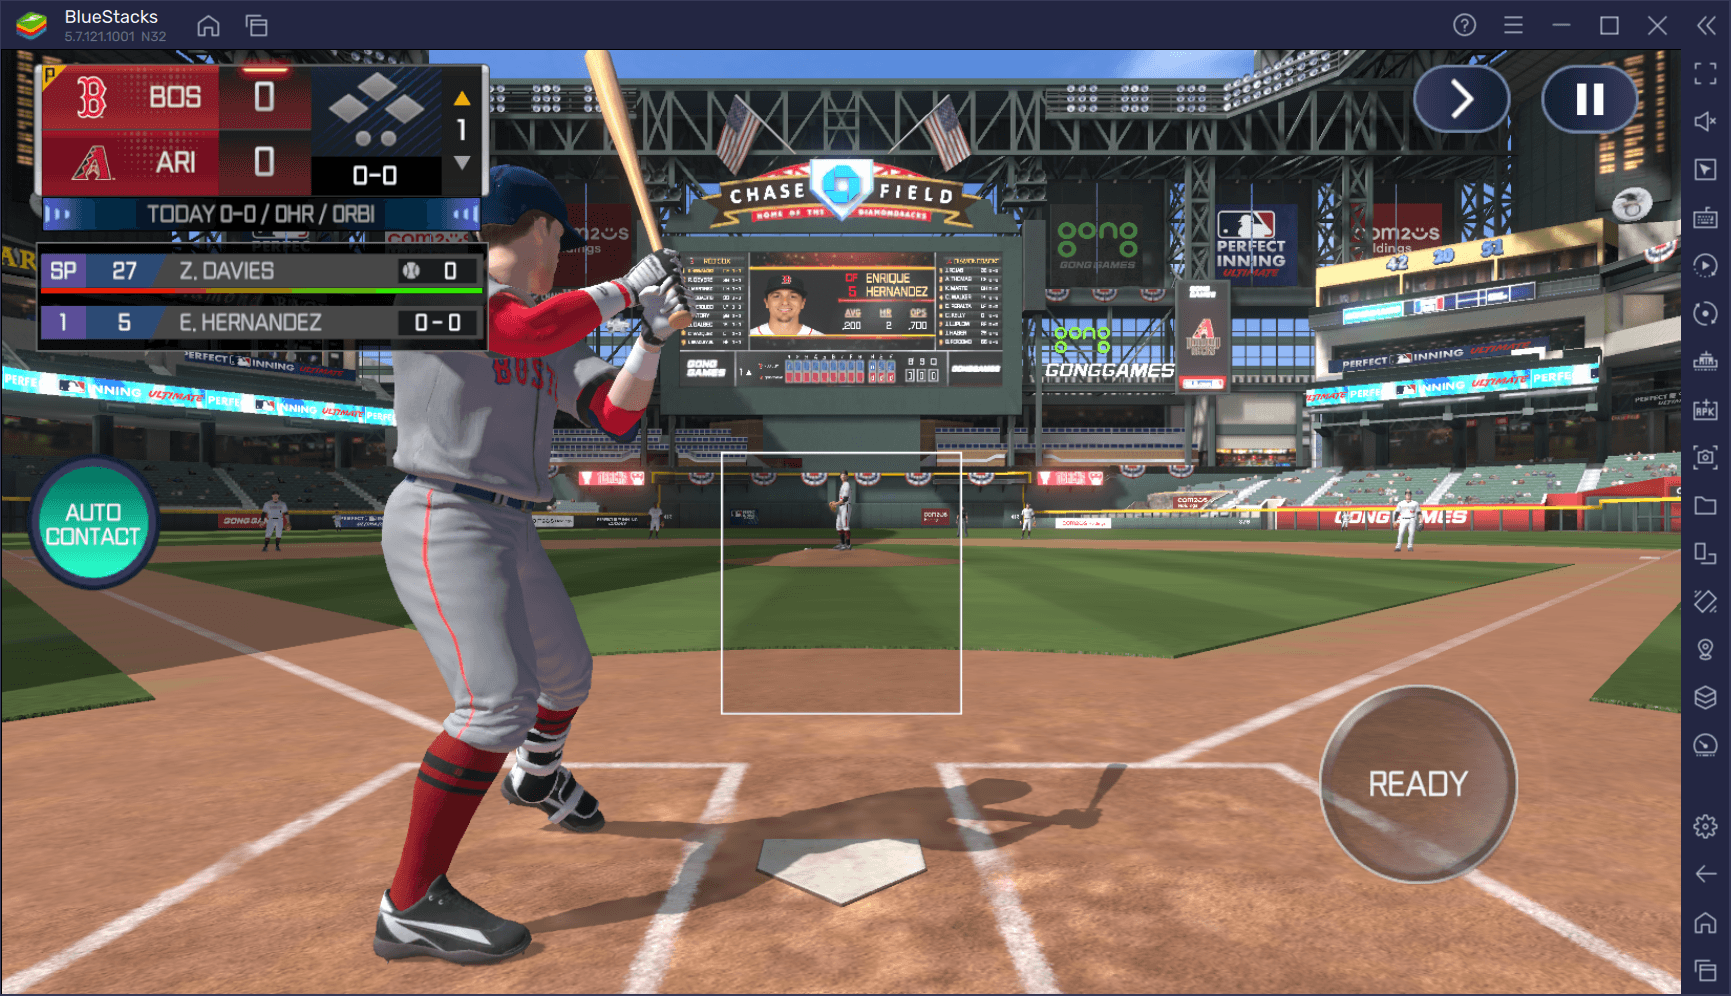 Гайд по инструментам BlueStacks для игры в MLB Perfect Inning: Ultimate. Как получить преимущество над соперниками и полюбить бейсбол?